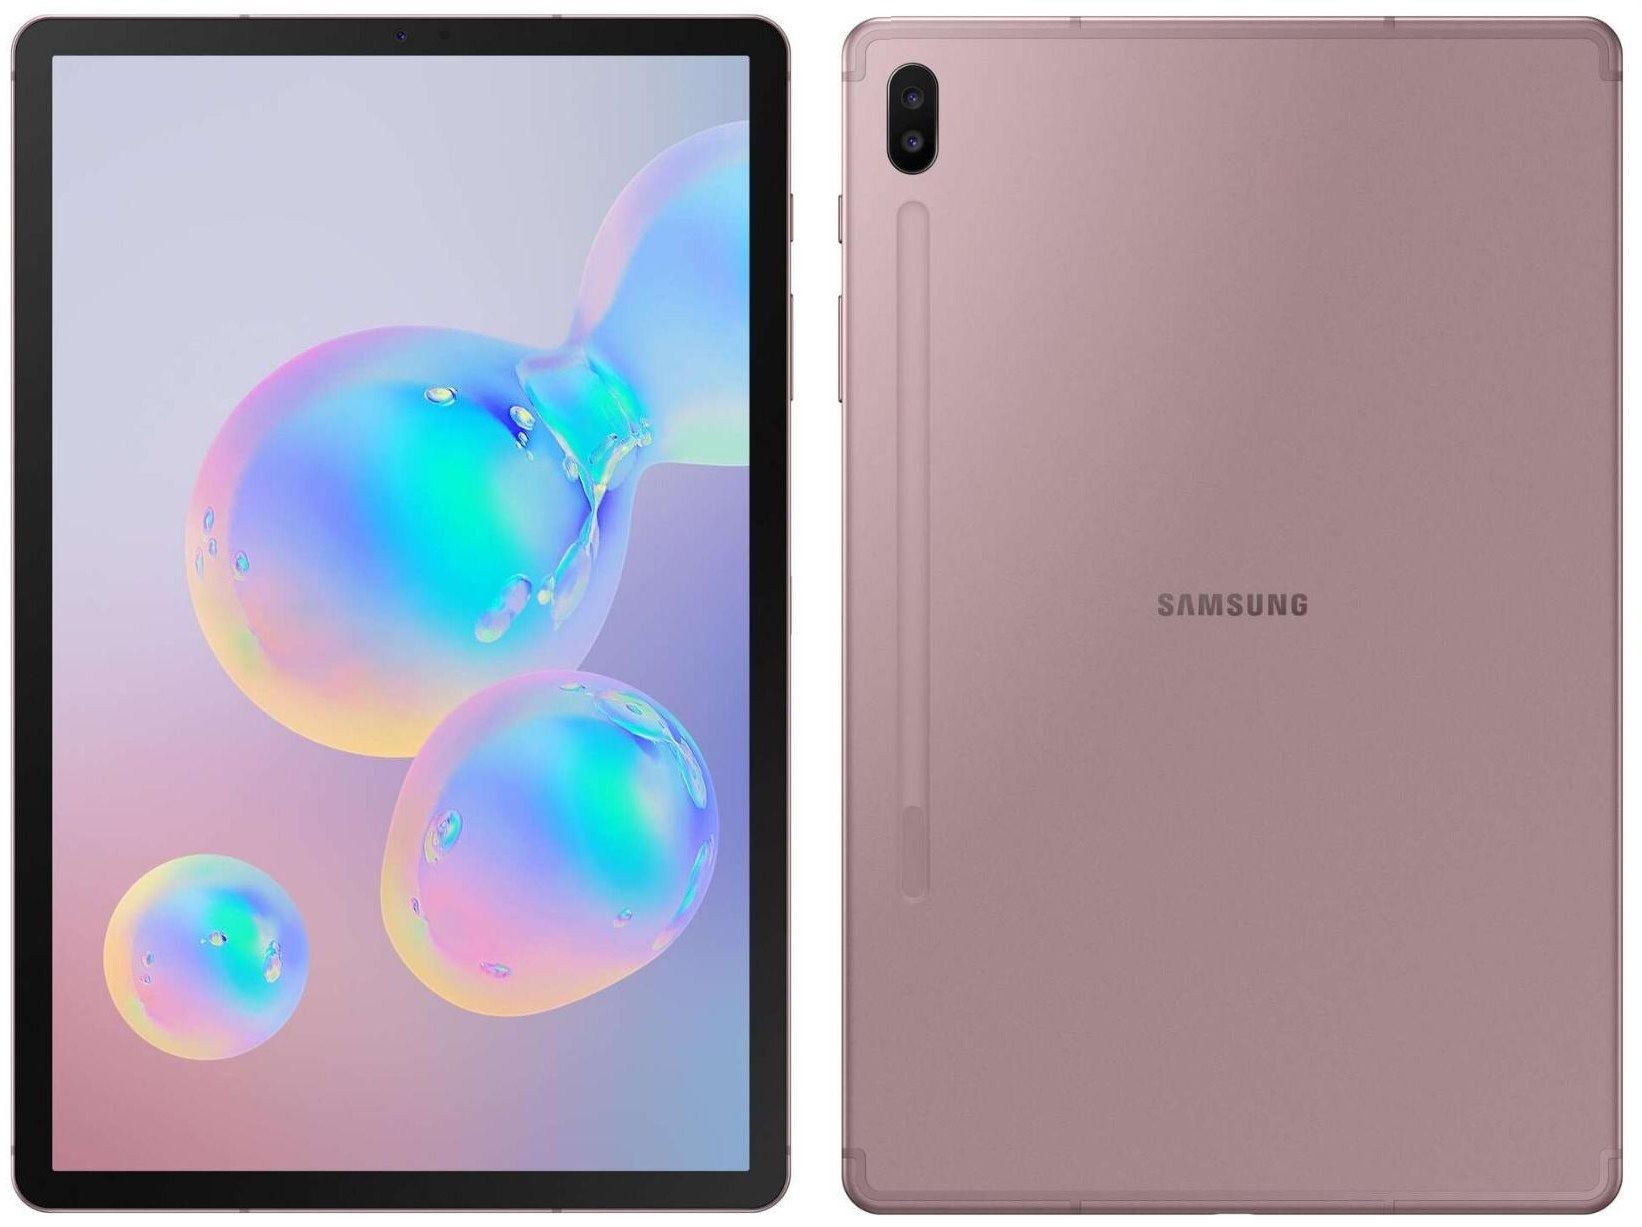 Render baru menawarkan tampilan warna pink yang lebih dekat Galaxy Tab S6 1